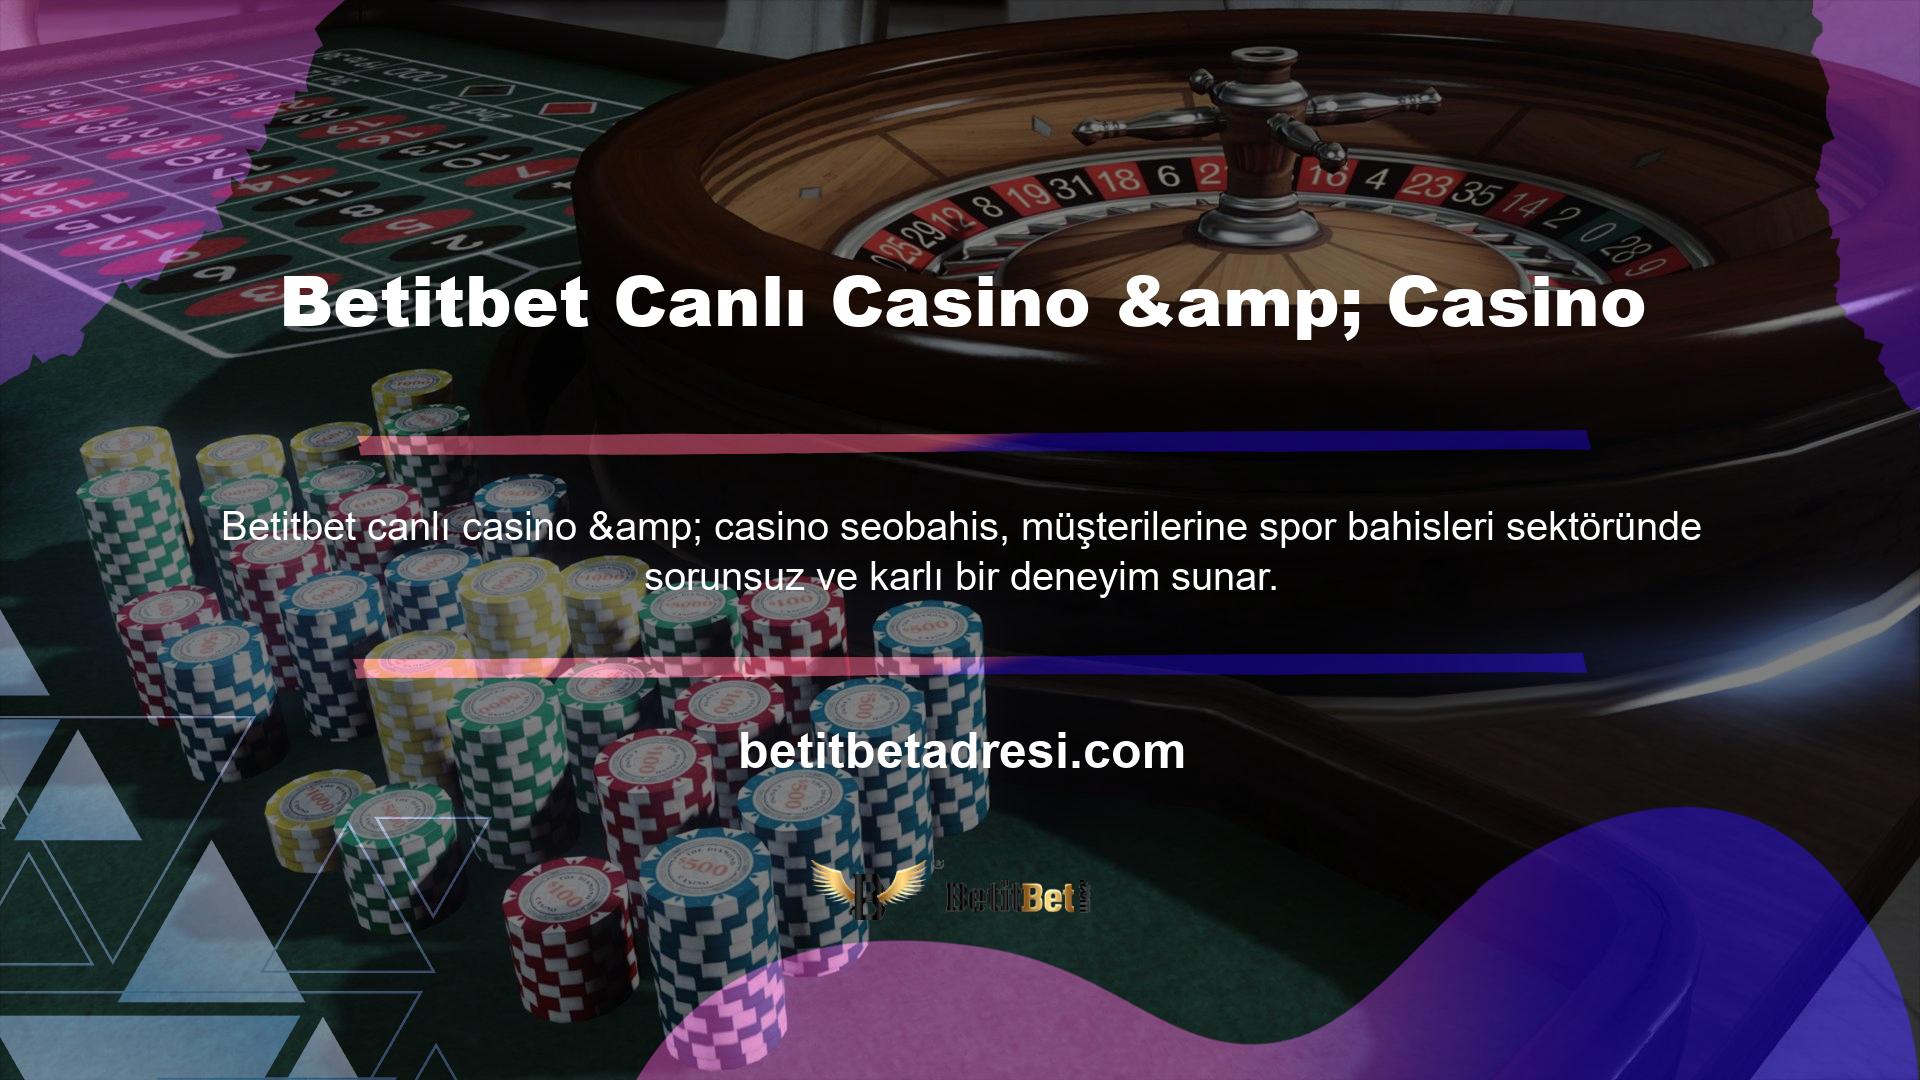 Betitbet Casino ve Canlı Casino bölümleri, casino sitesinin oyun sağlayıcıları ile işbirliği içerisinde oldukça gelişmiştir